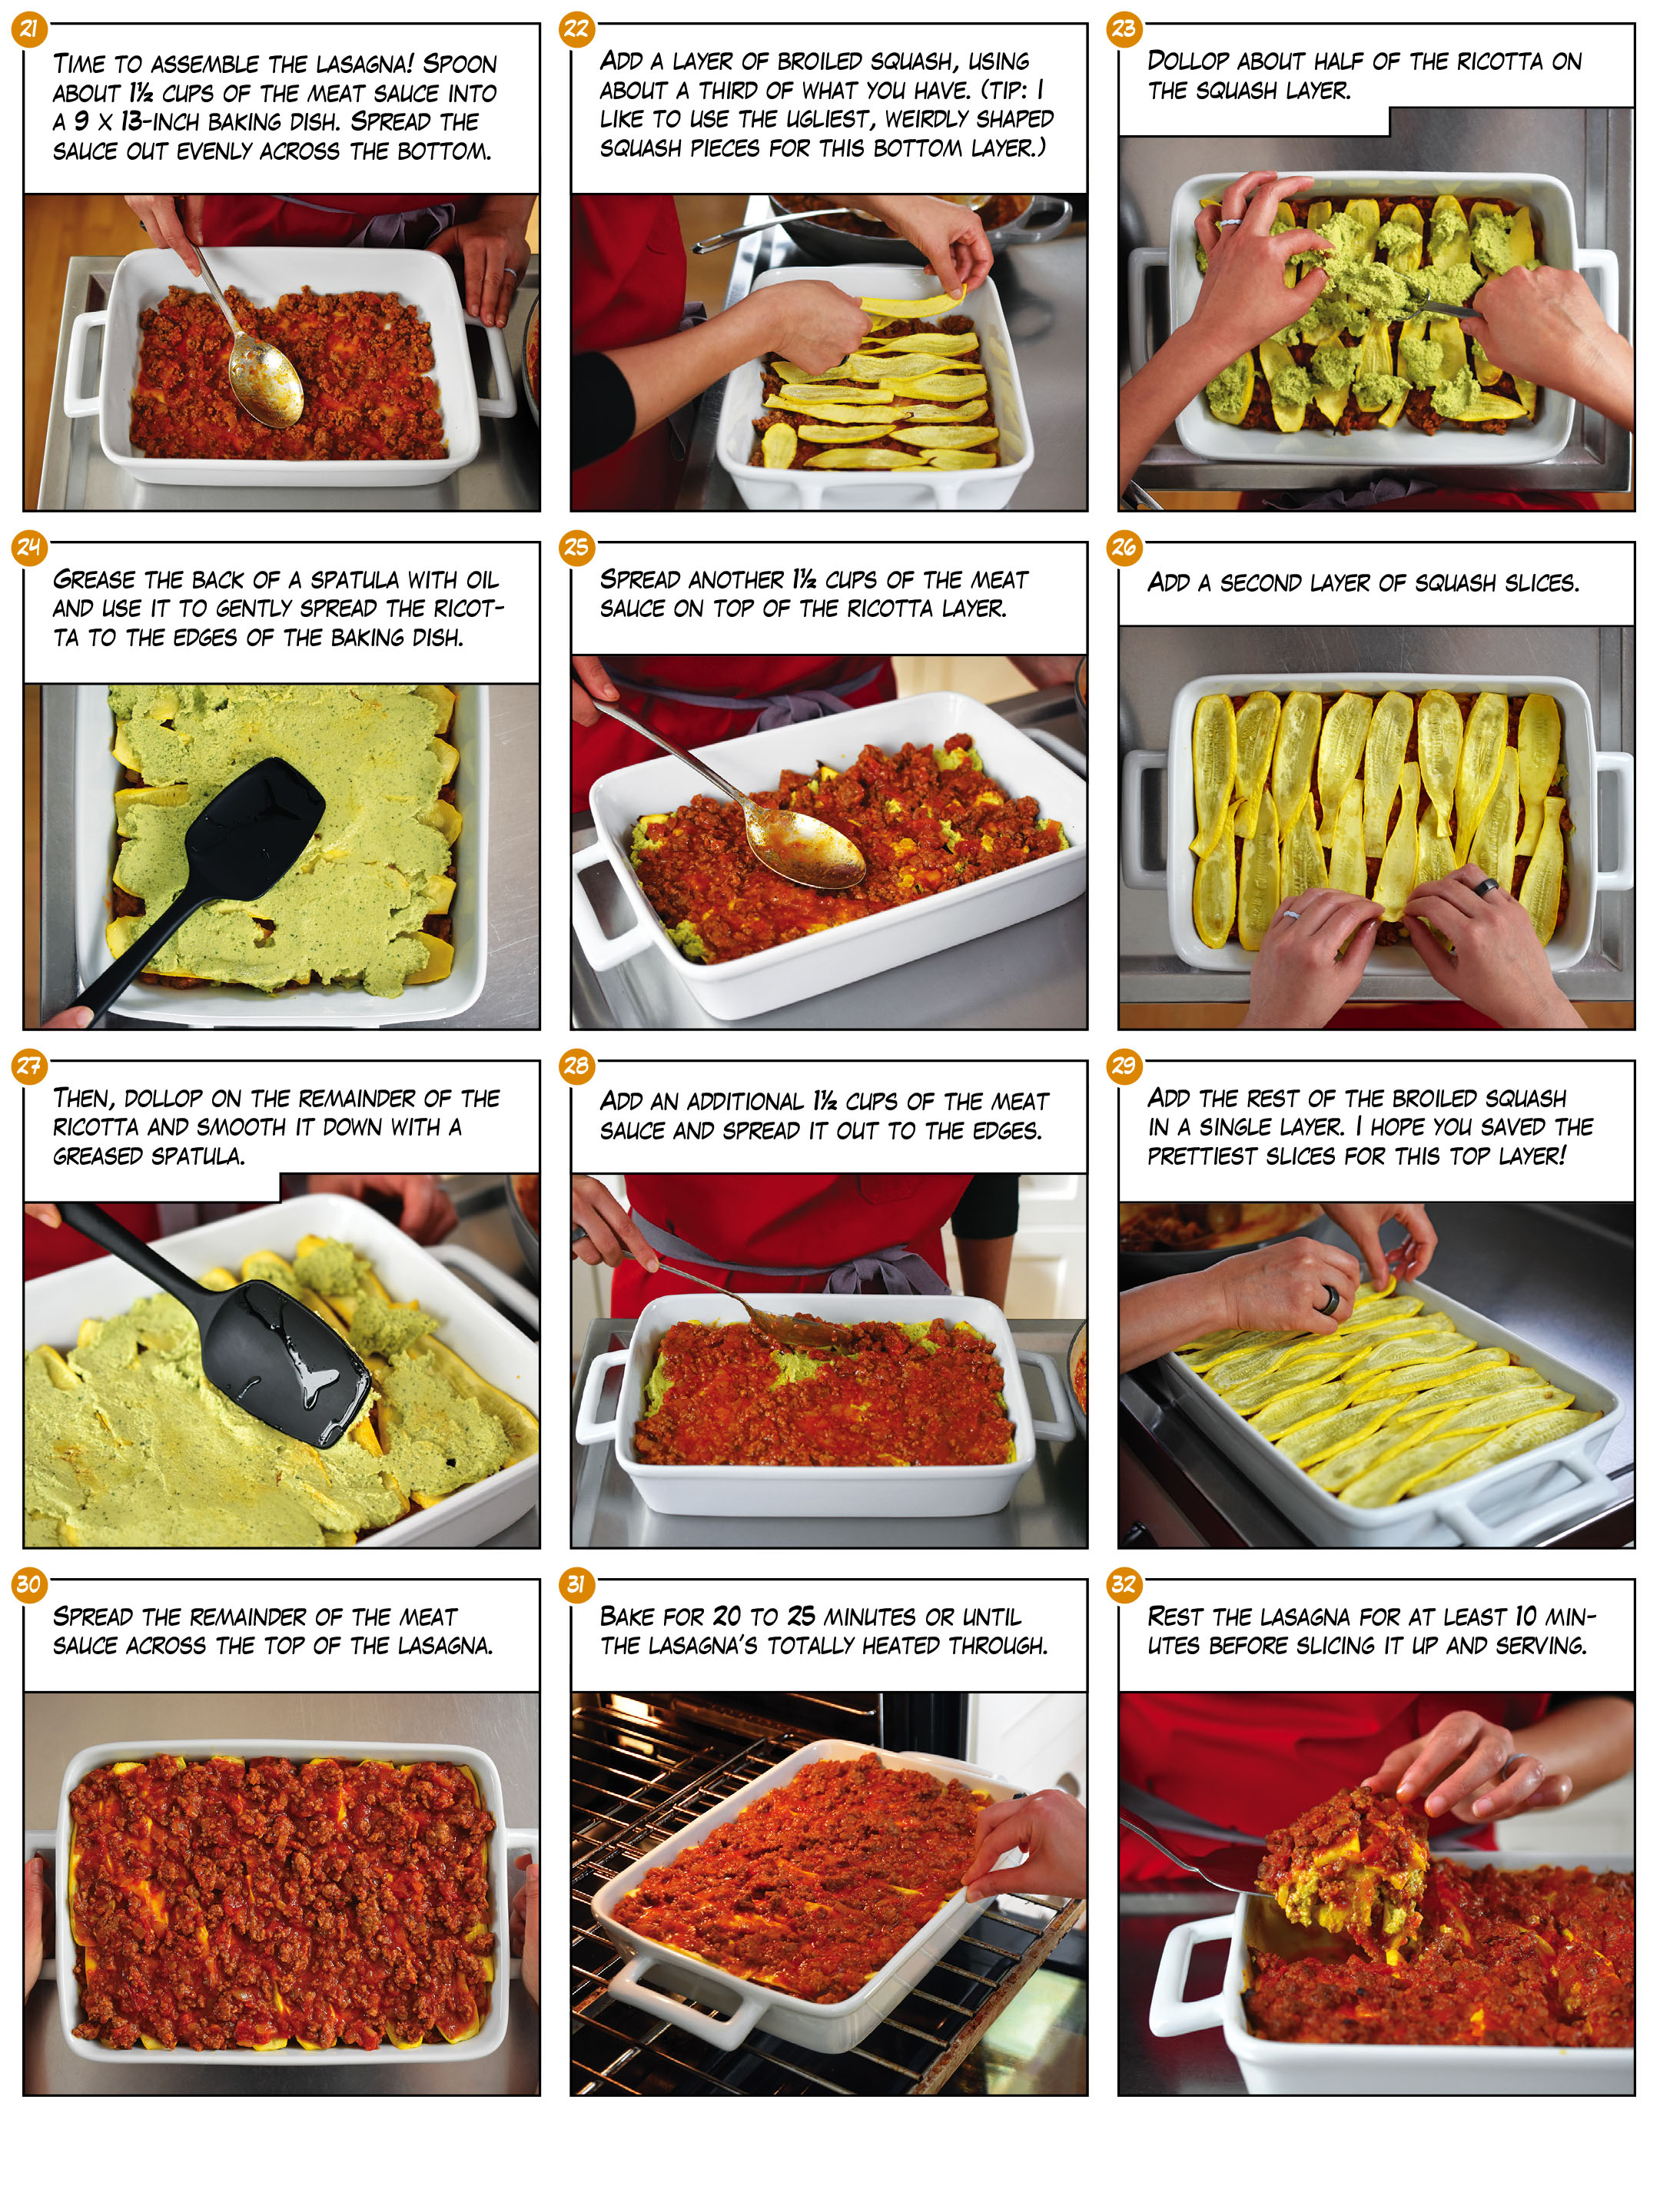 Sunday Night Lasagna Meal Kit part 3